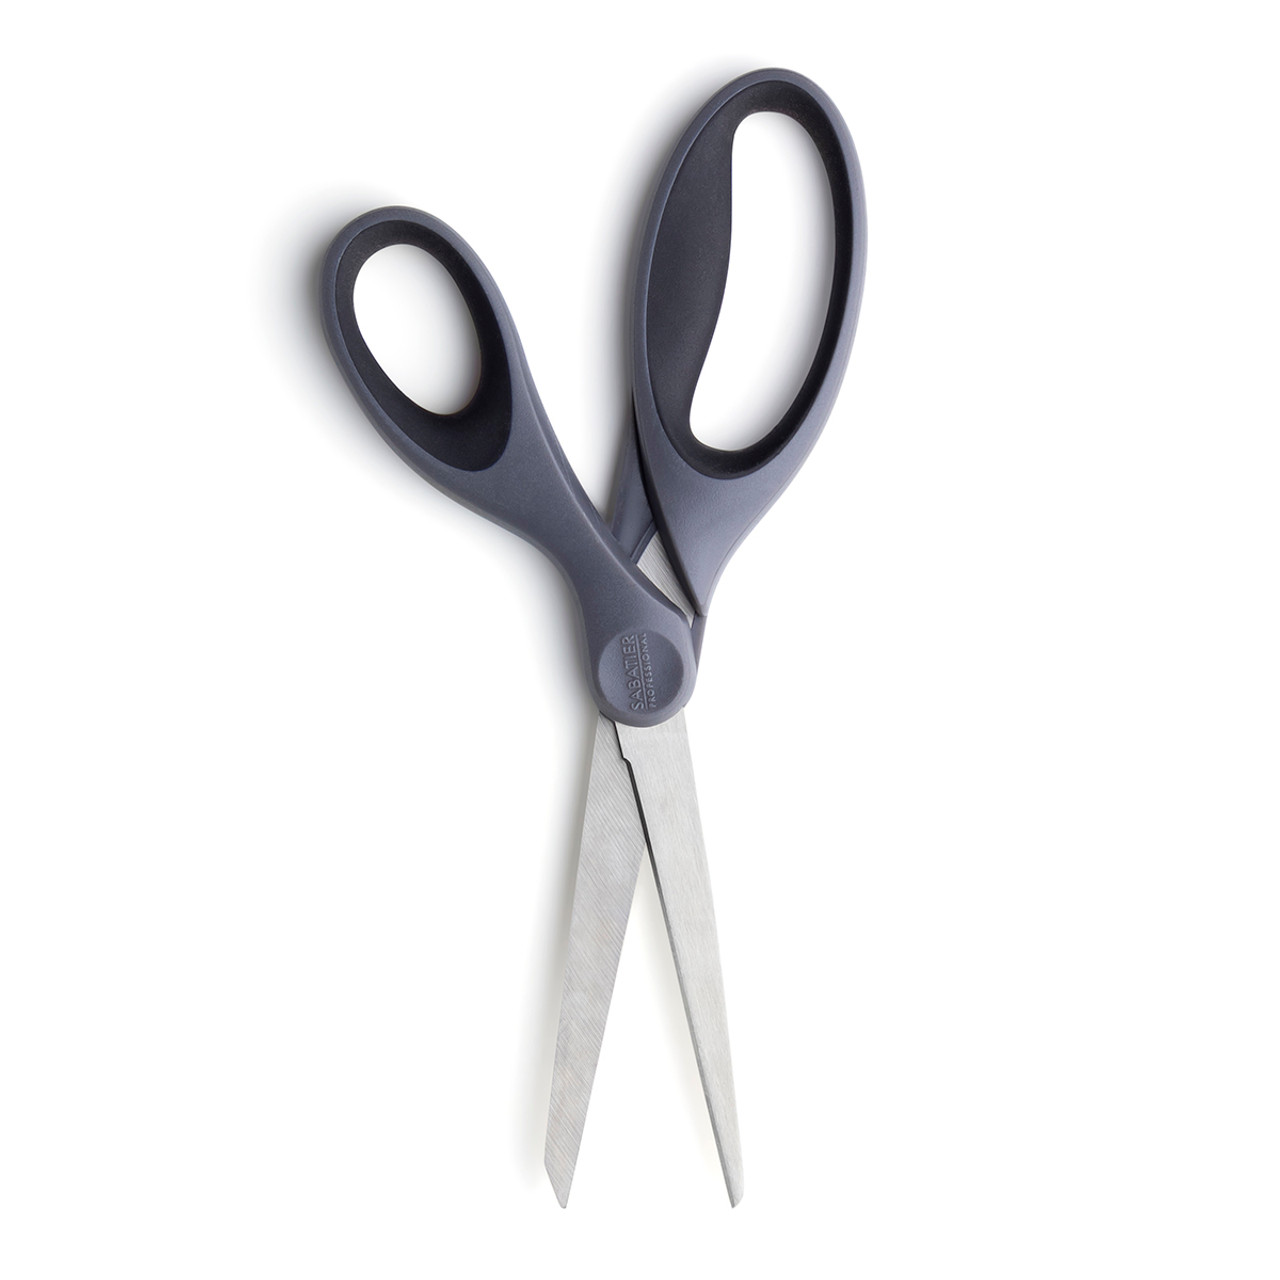 Sabatier L'expertise General Purpose Scissors - Bakewell Cookshop